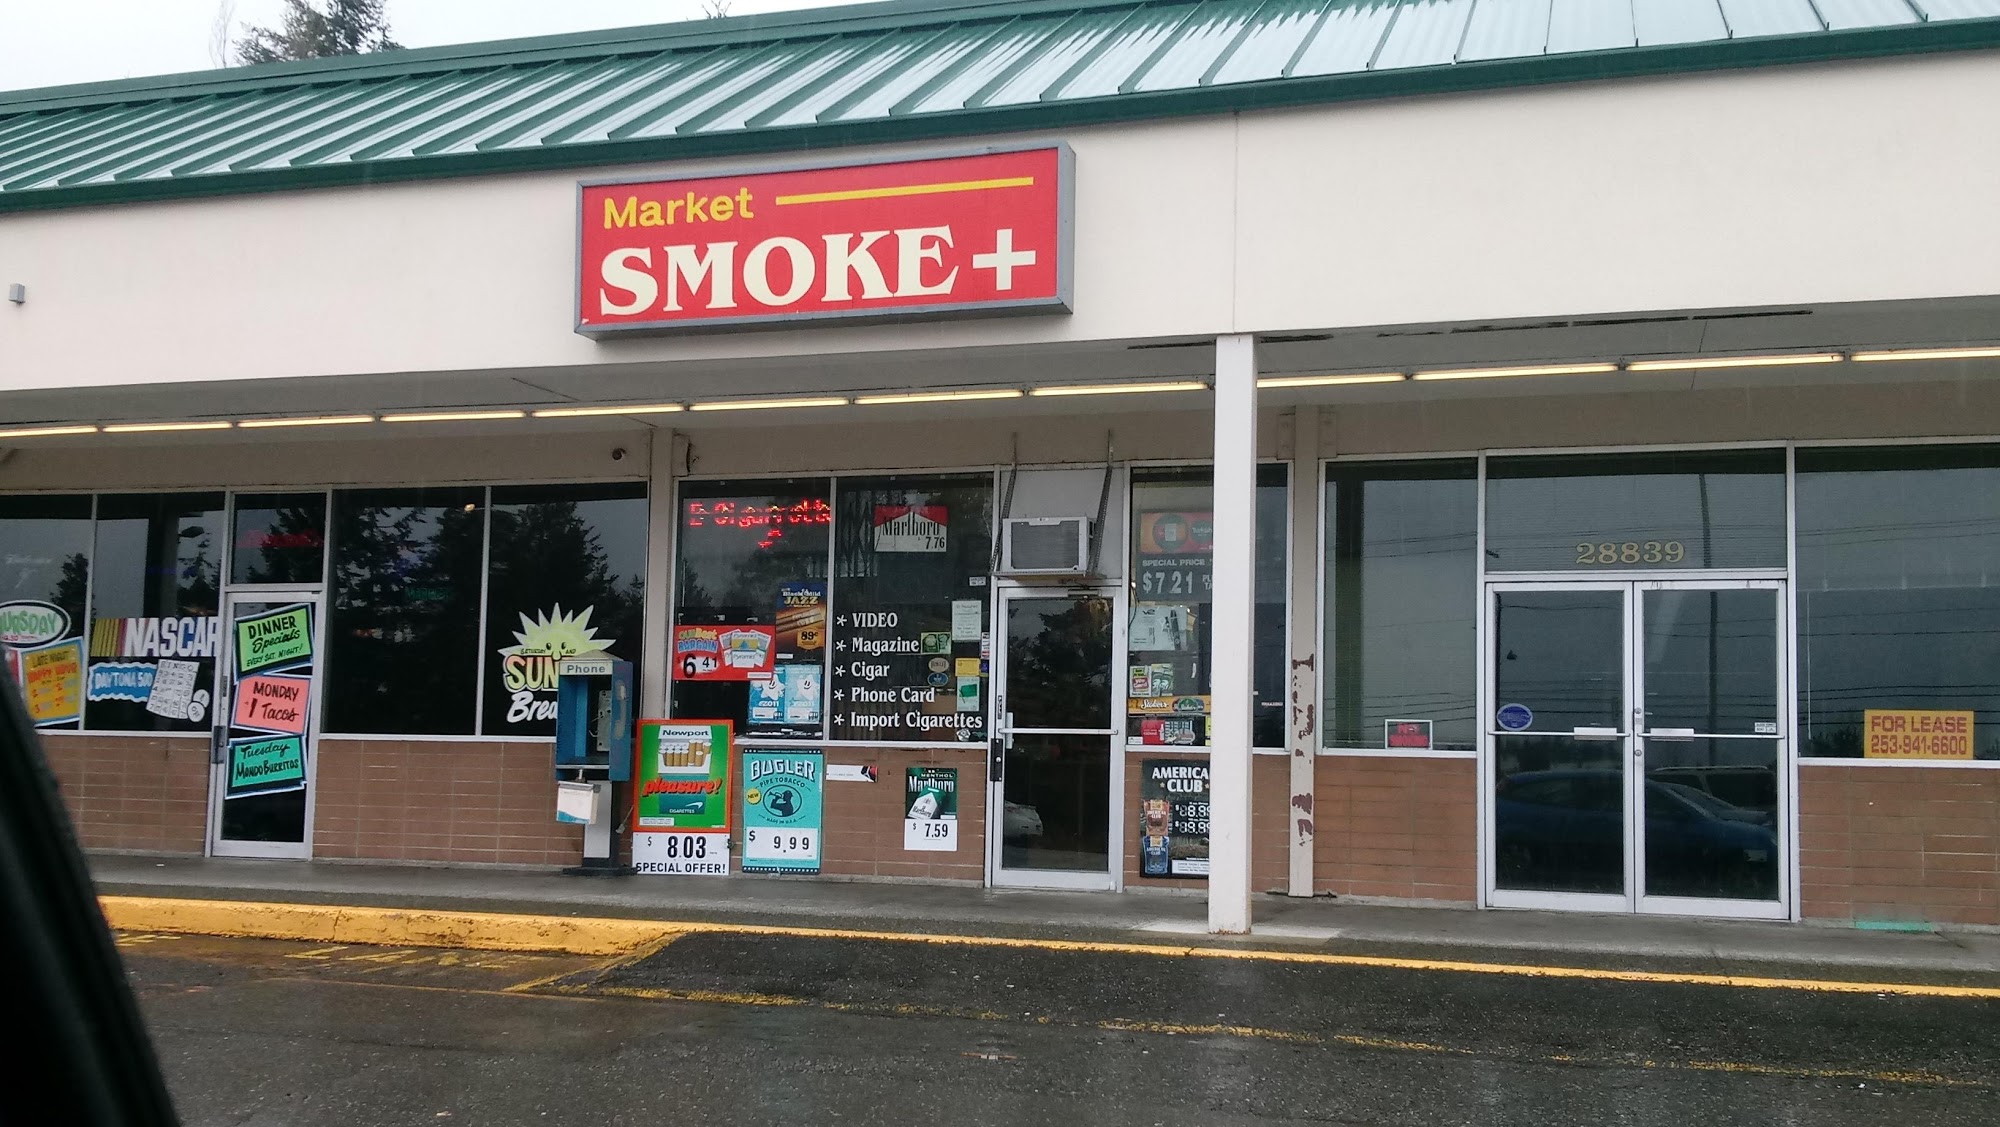 Market Smoke Plus